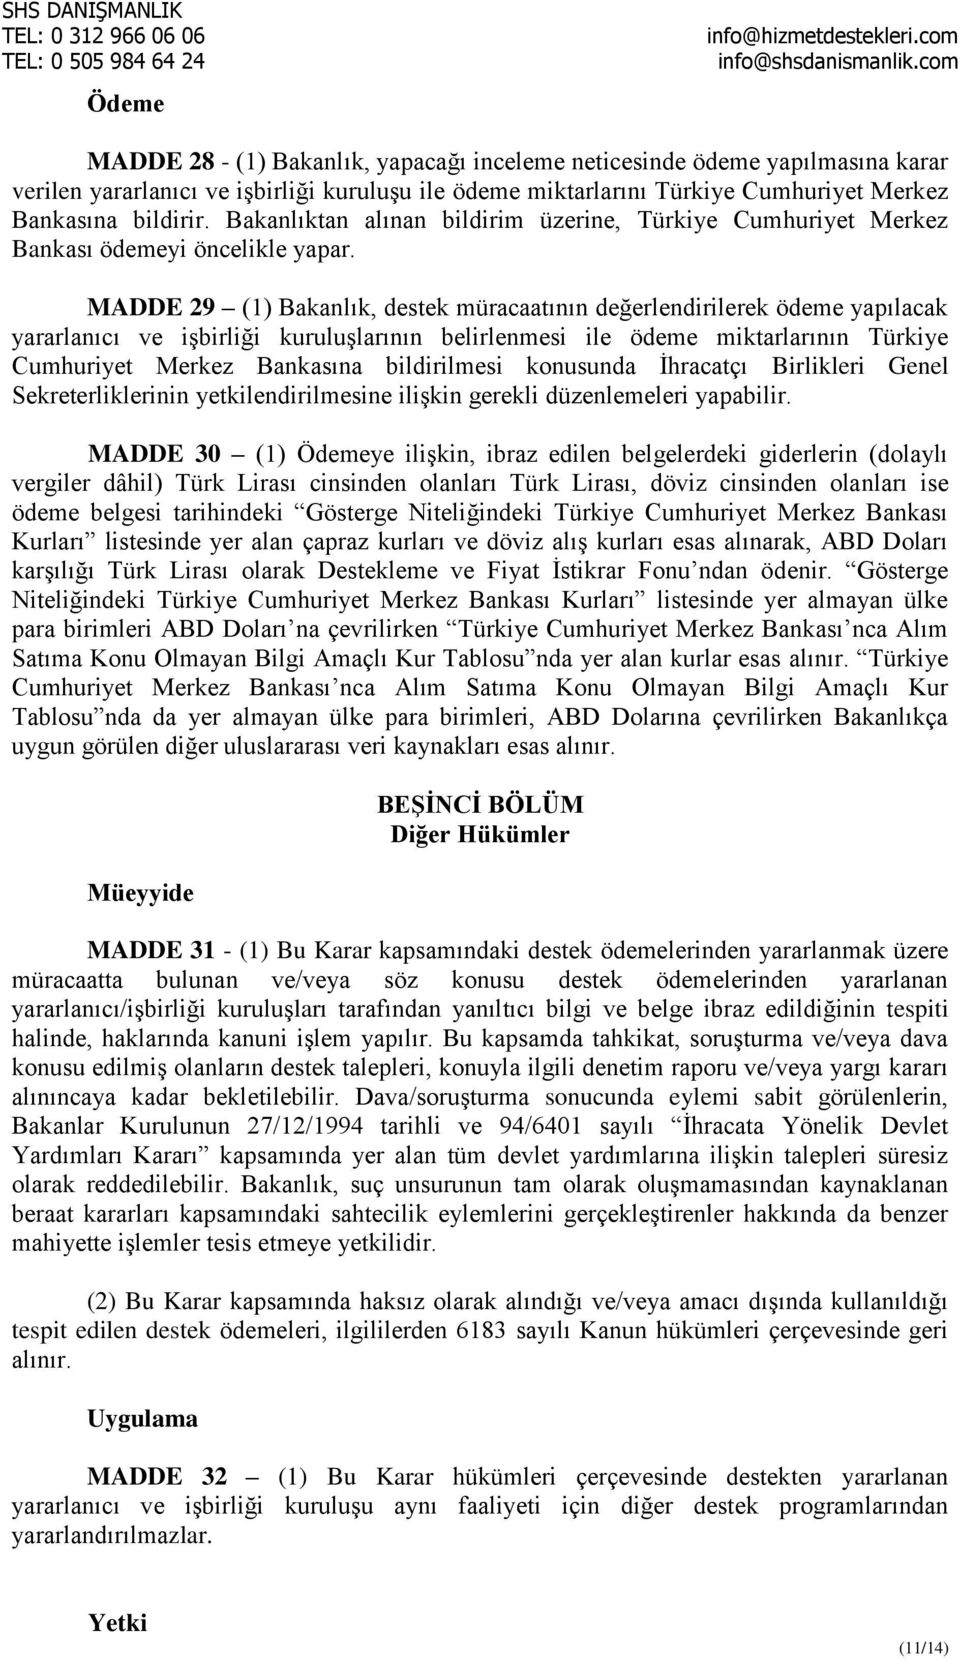 MADDE 29 (1) Bakanlık, destek müracaatının değerlendirilerek ödeme yapılacak yararlanıcı ve işbirliği kuruluşlarının belirlenmesi ile ödeme miktarlarının Türkiye Cumhuriyet Merkez Bankasına